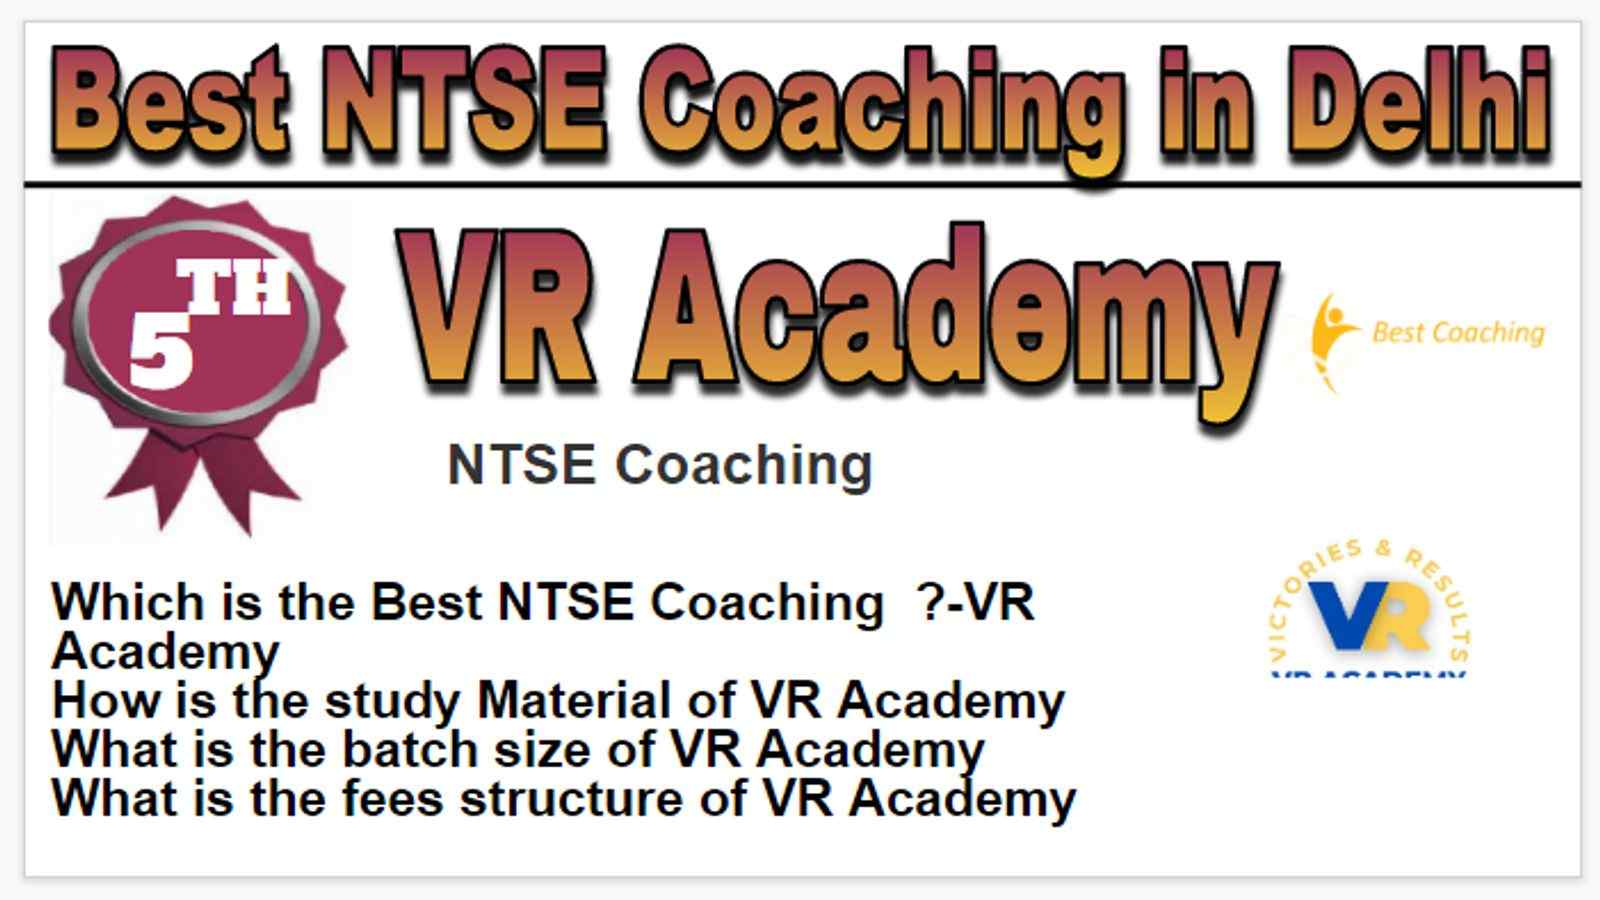 Rank 5 Best NTSE Coaching in Delhi